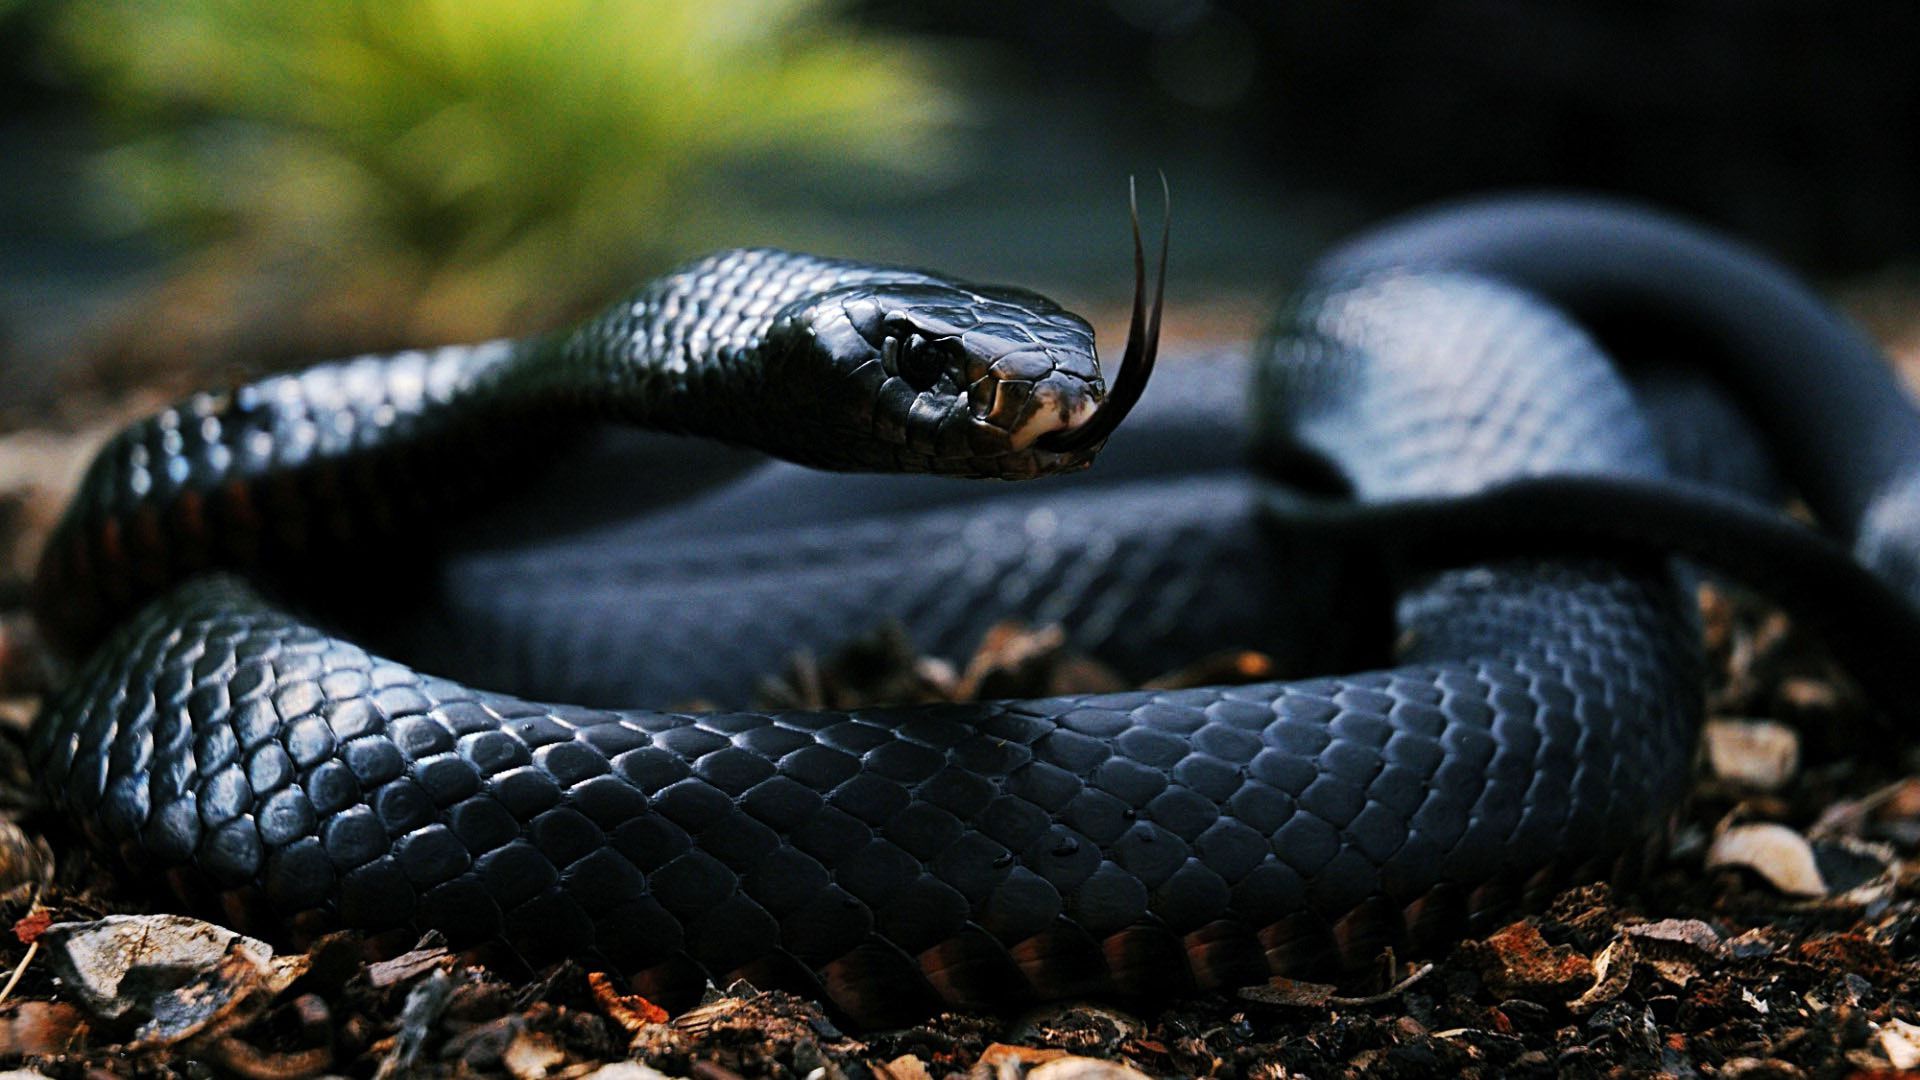 Snake - Black Snake , HD Wallpaper & Backgrounds